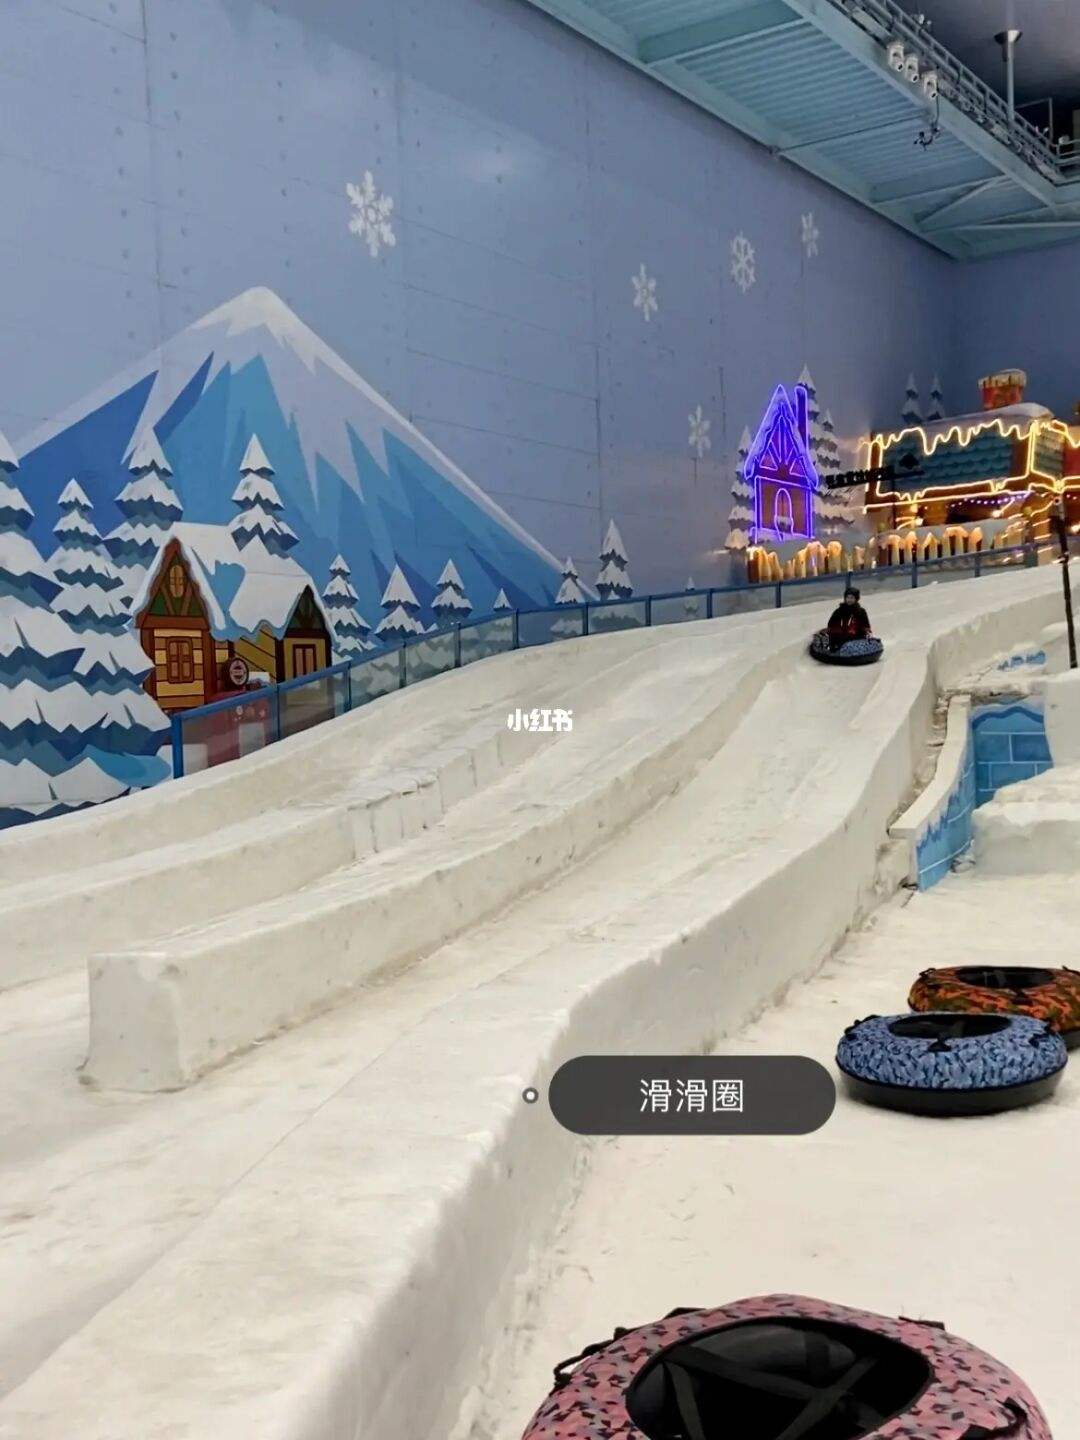 上海室内滑雪场 临港图片